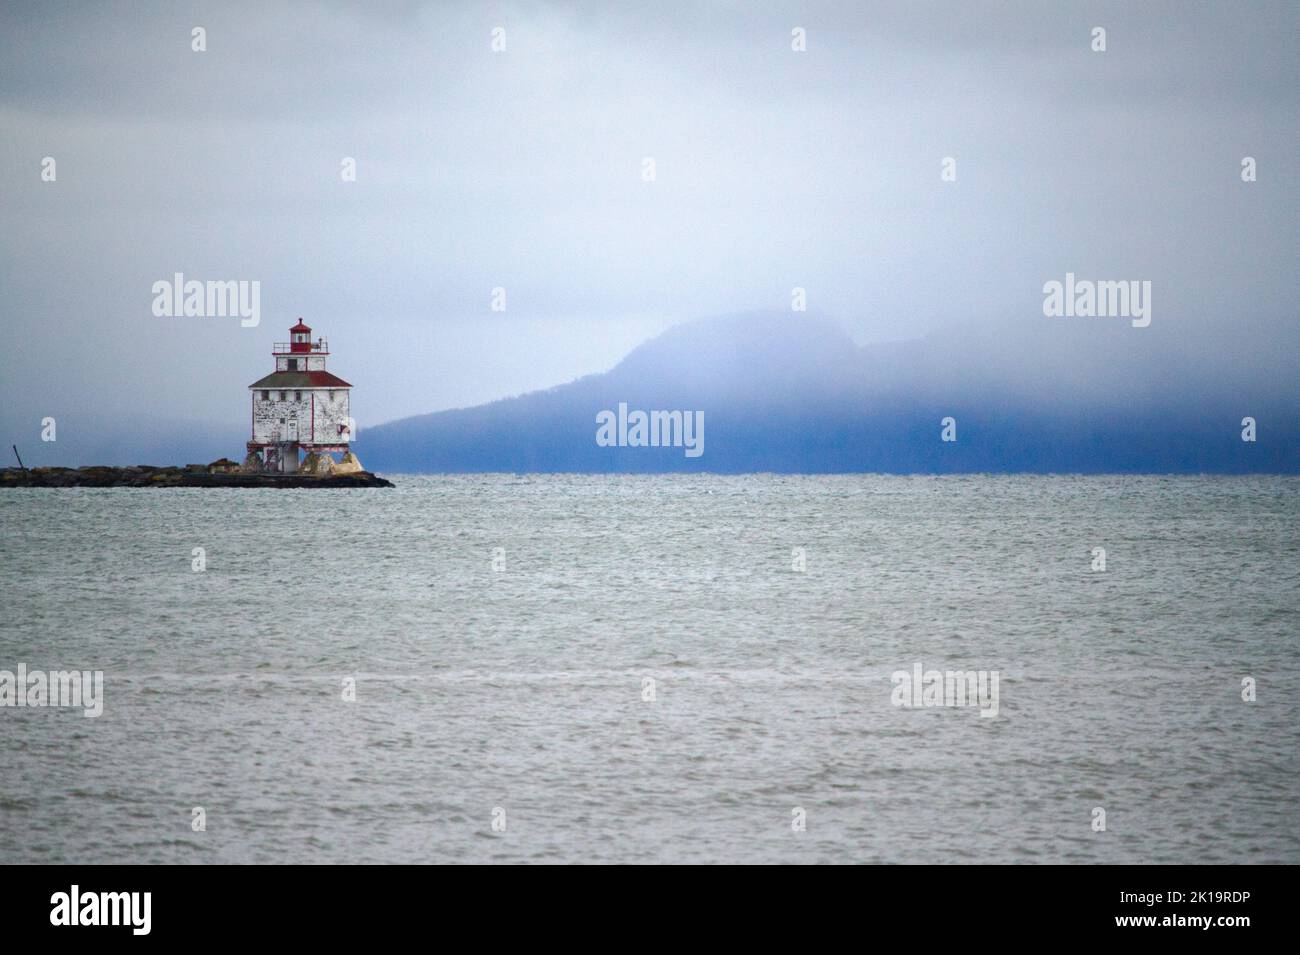 Der Thunder Bay Lighthouse gegen den schlafenden Riesen am Lake Superior an einem nebligen Tag. Stockfoto